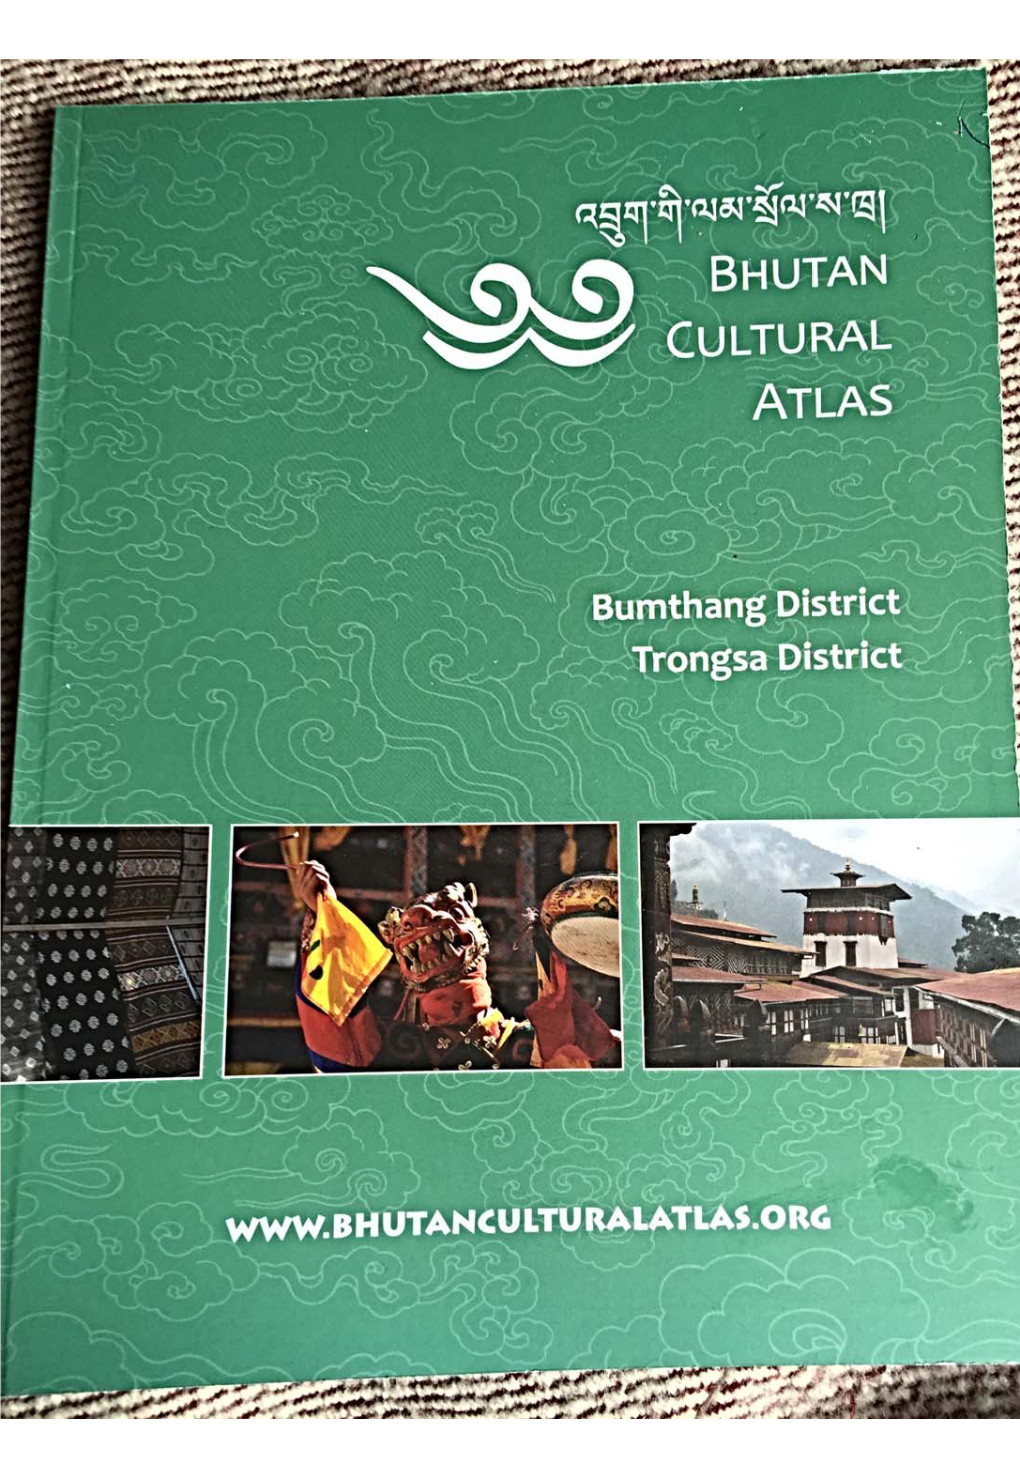 Bhutan Cultural Atlas Acknowledgements